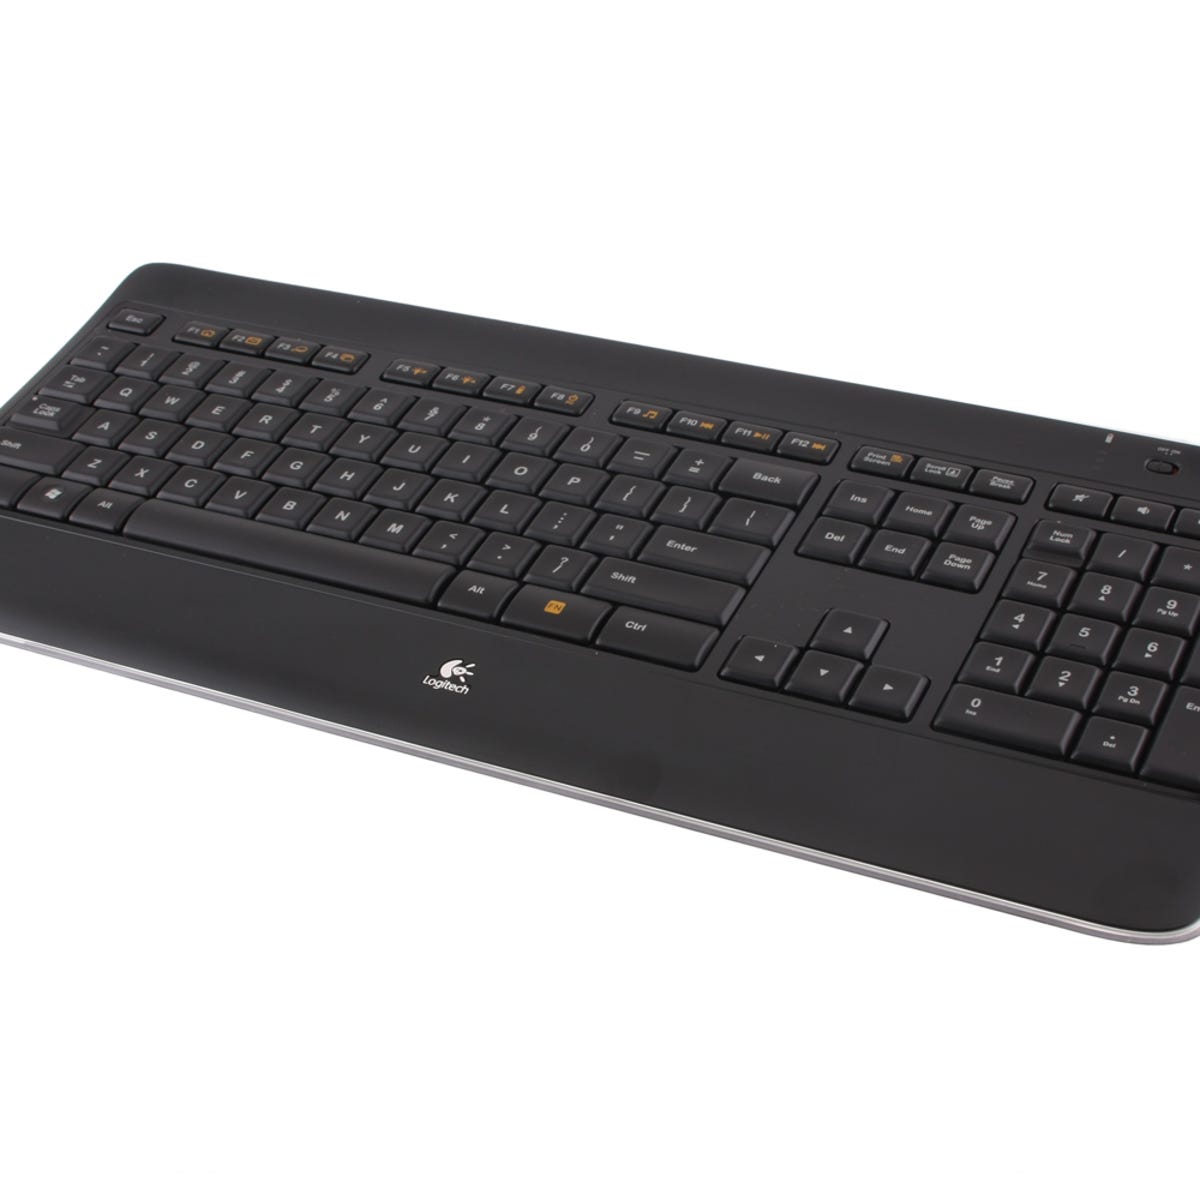 enestående Kong Lear etikette Logitech K800 Wireless Illuminated Keyboard review: Logitech K800 Wireless  Illuminated Keyboard - CNET